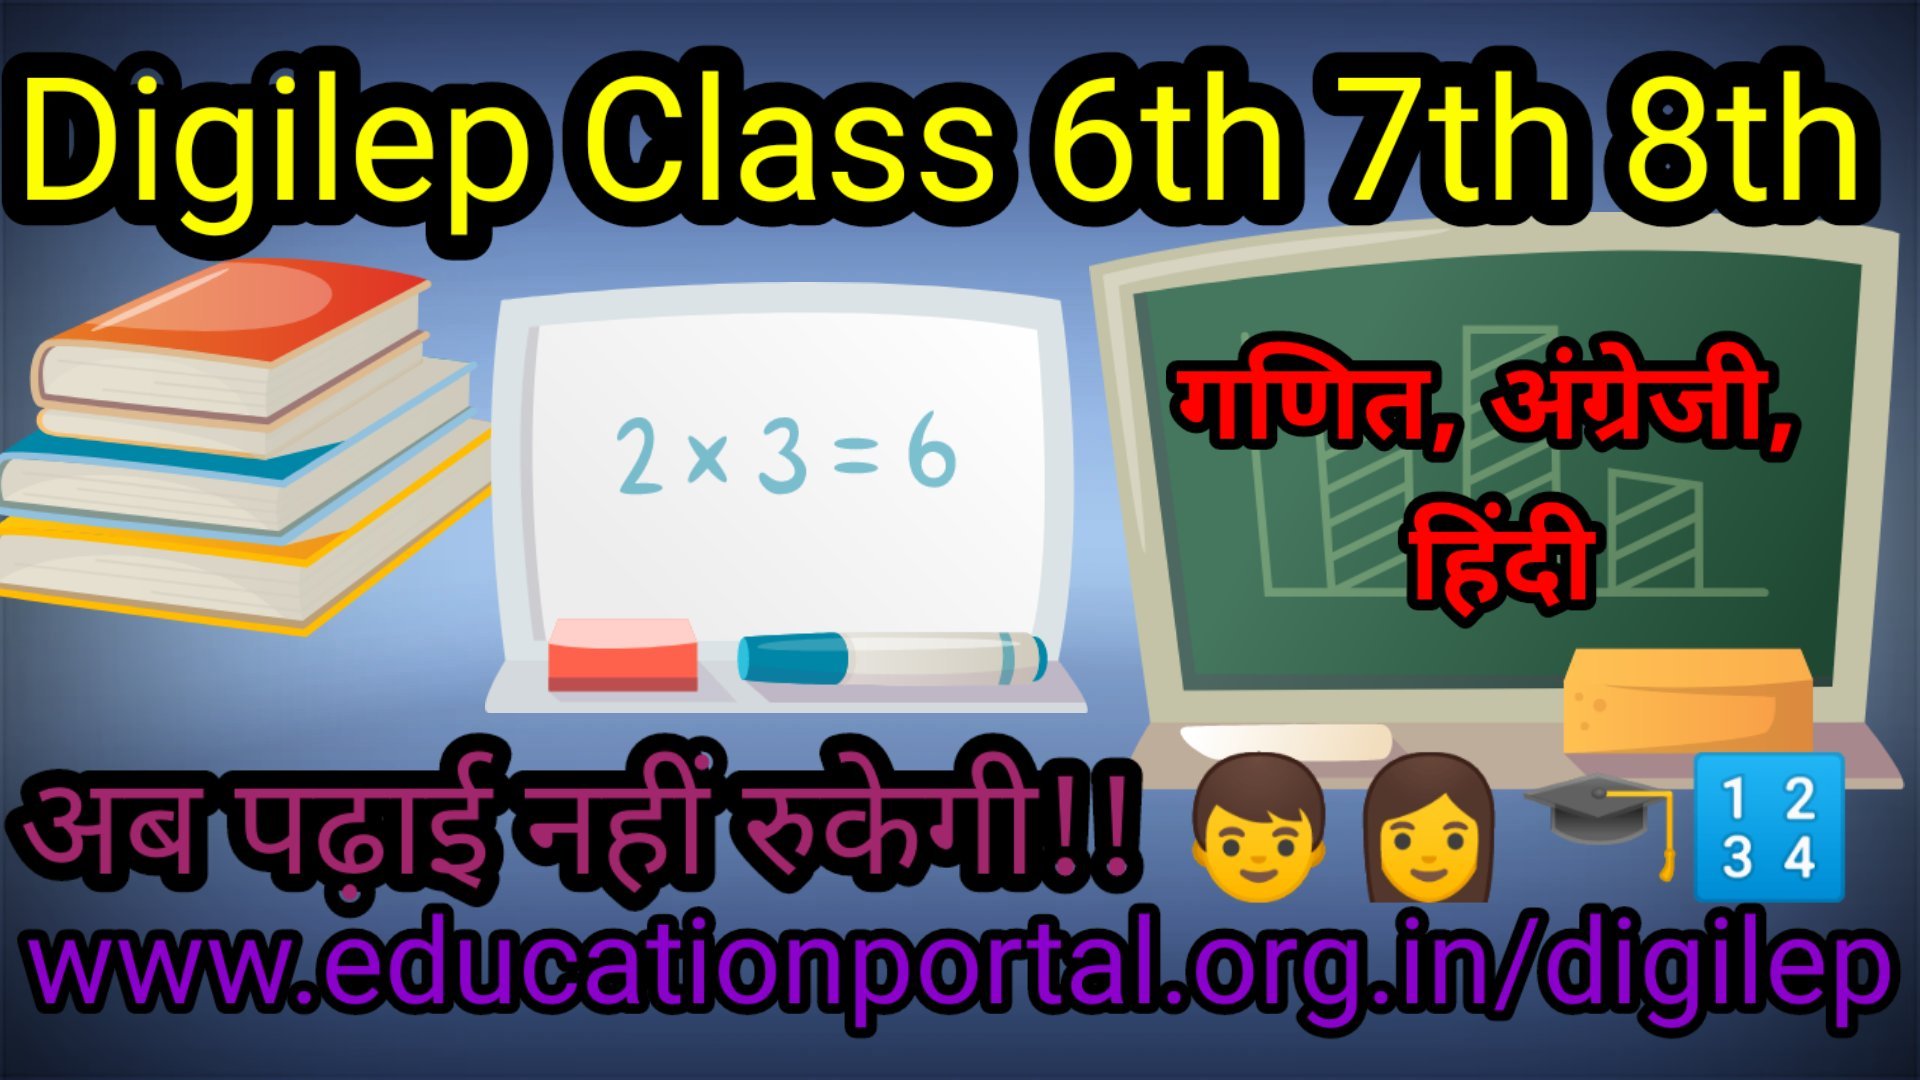 Digilep Middle School Class 6th to 8th 4th January 2021 Hindi English Maths बड़ी संख्याओं की समझ व उपयोगिता, कोष्ठक का उपयोग